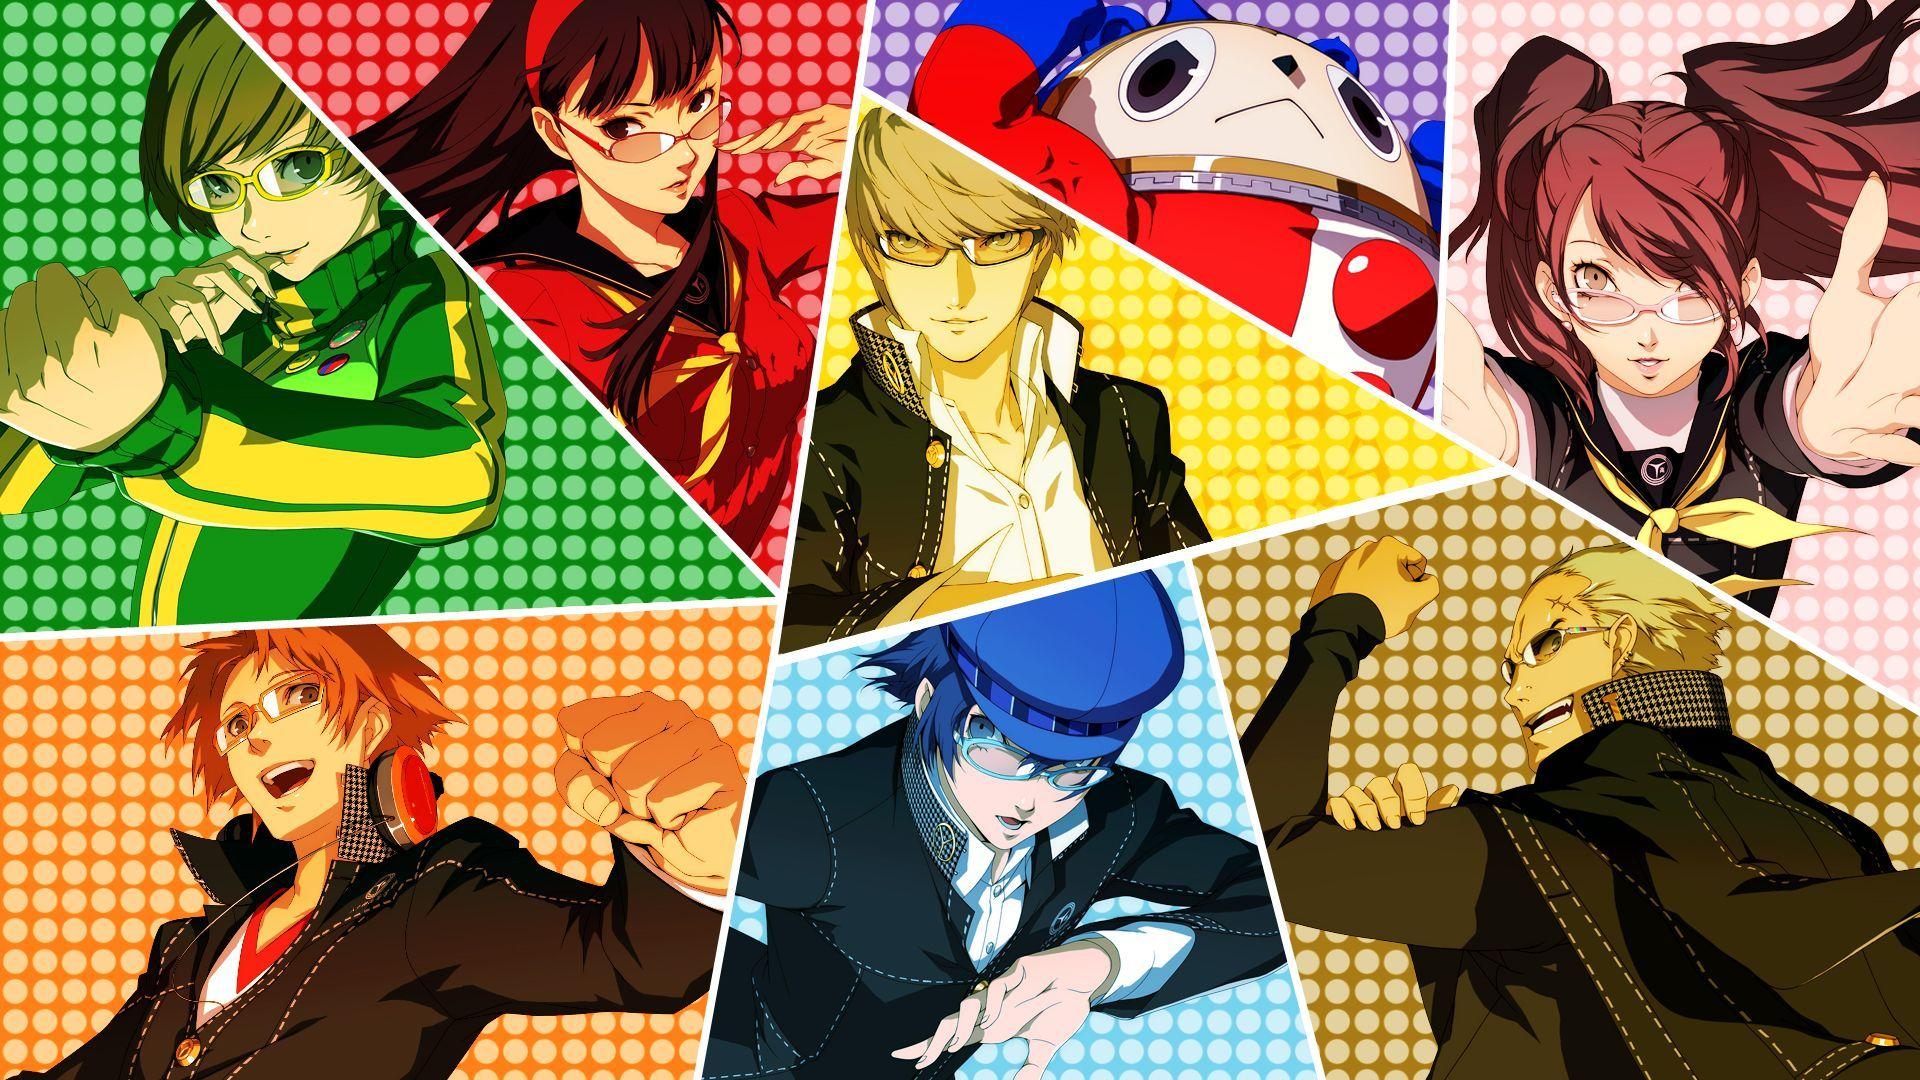 Persona 4 HD Wallpaper Free Download. Persona squad